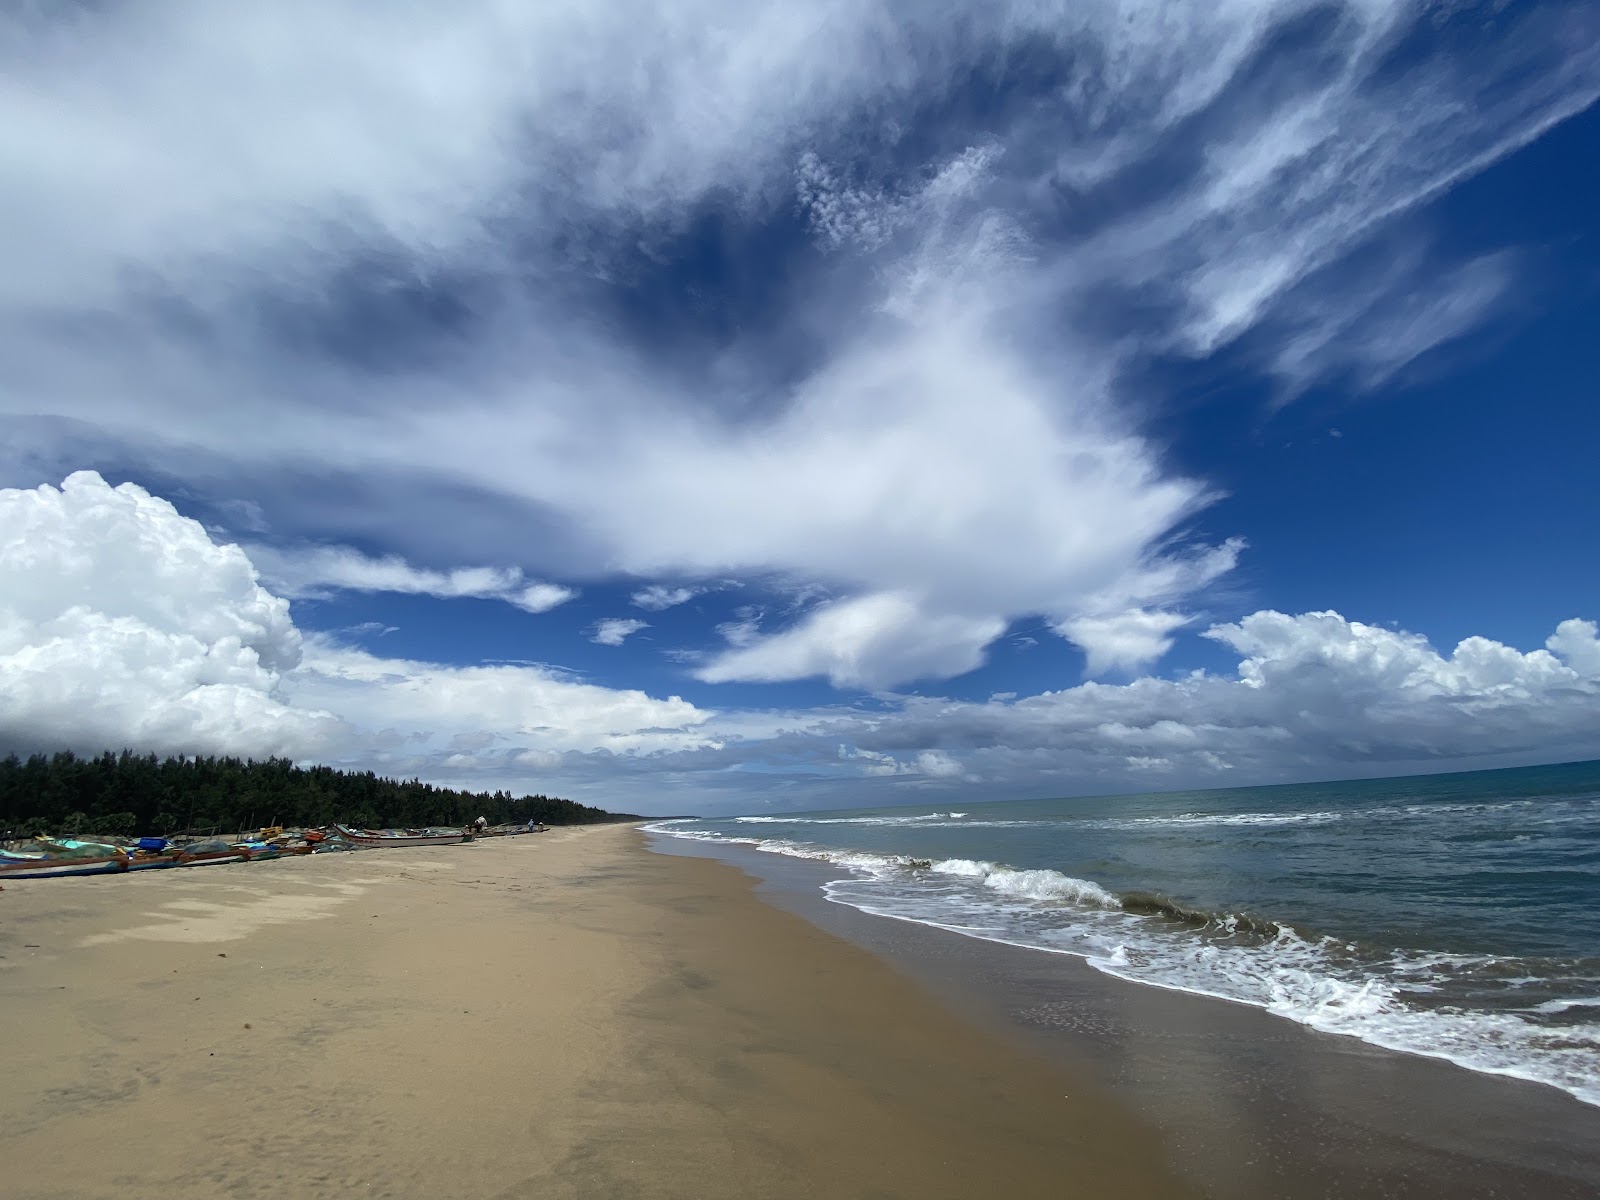 Valokuva Thirumullaivasal Beachista. pinnalla kirkas hiekka:n kanssa